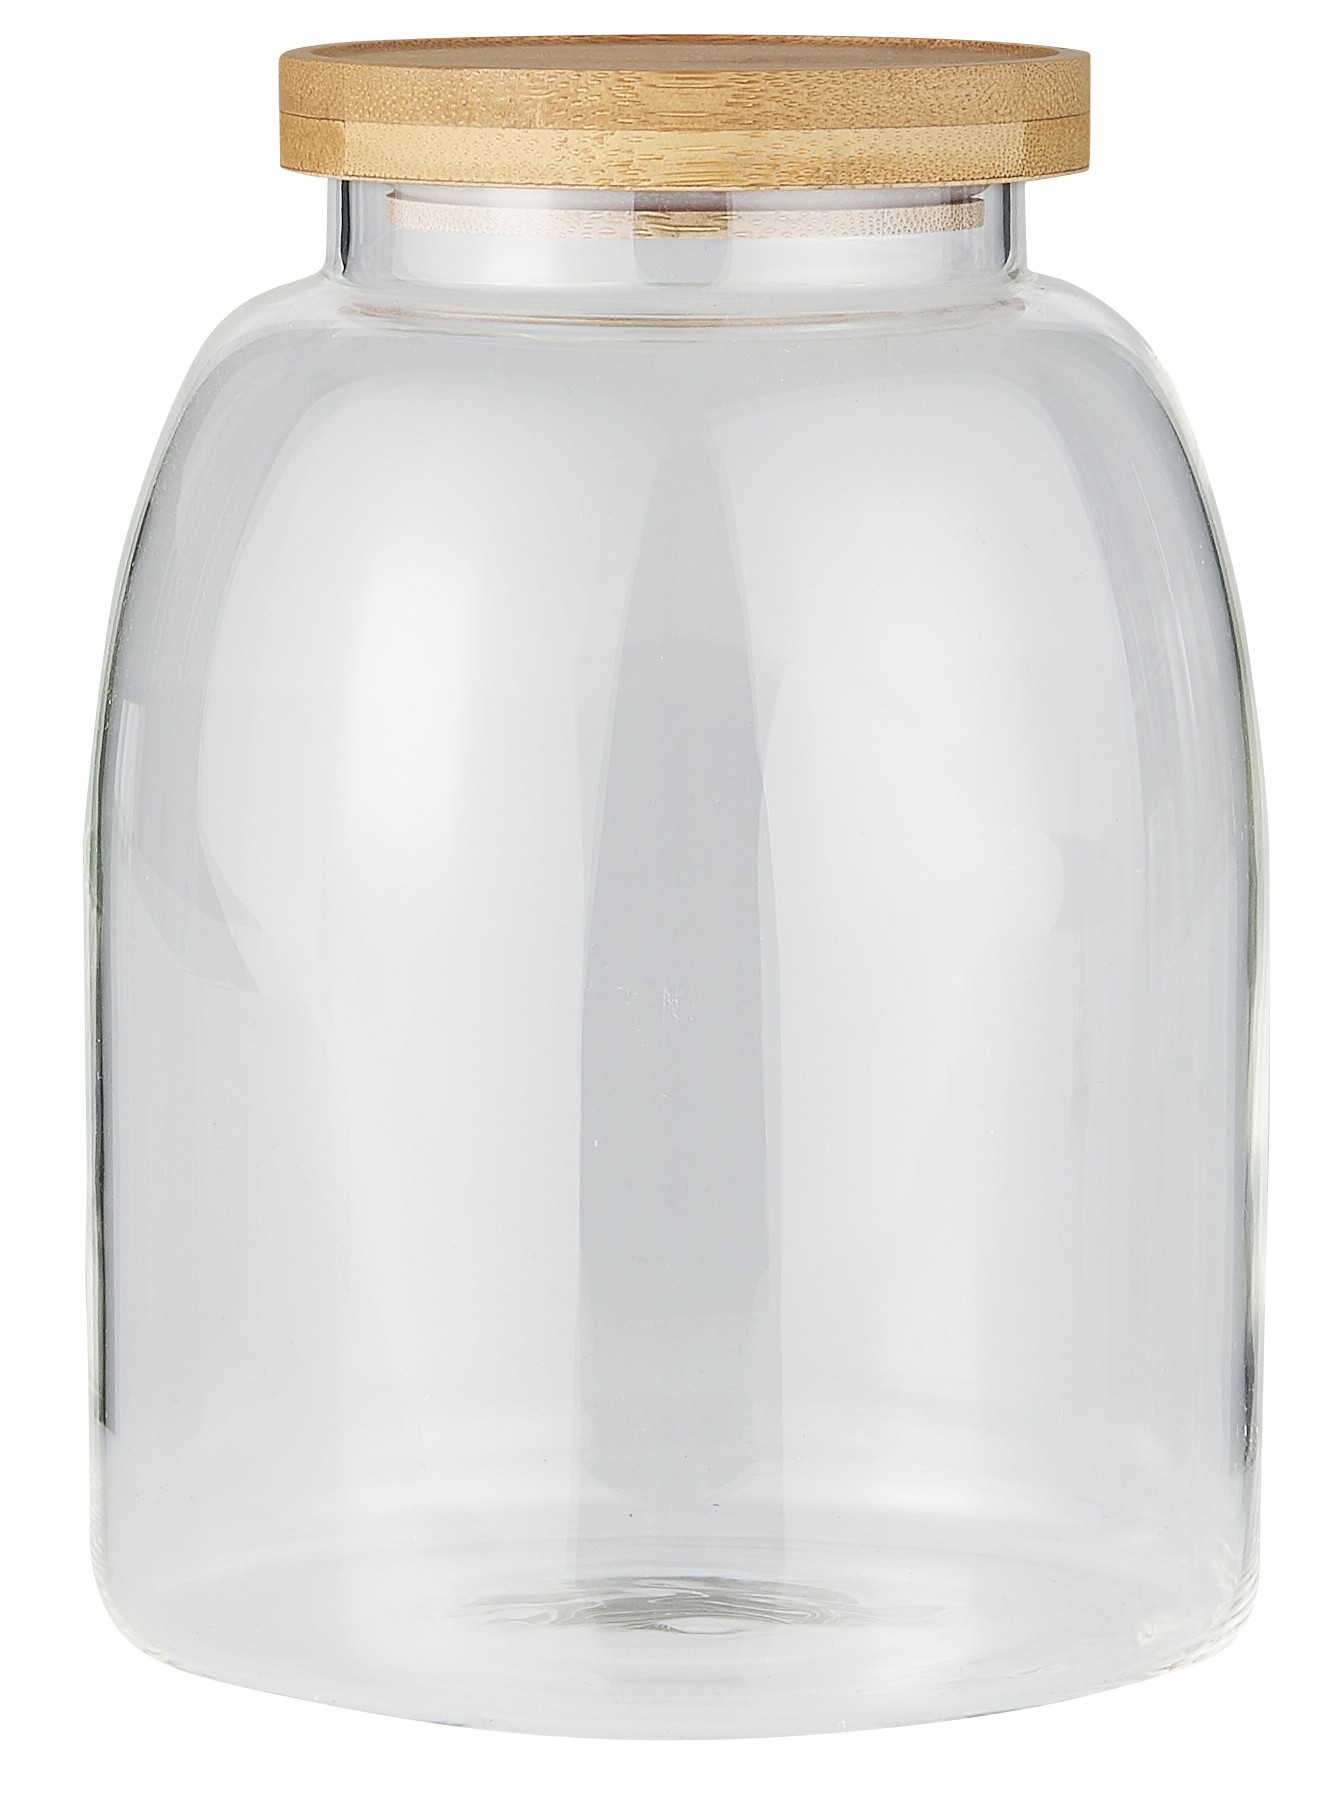 Grand bocal conservation verre 4 litres Couleur transparent Ib Laursen